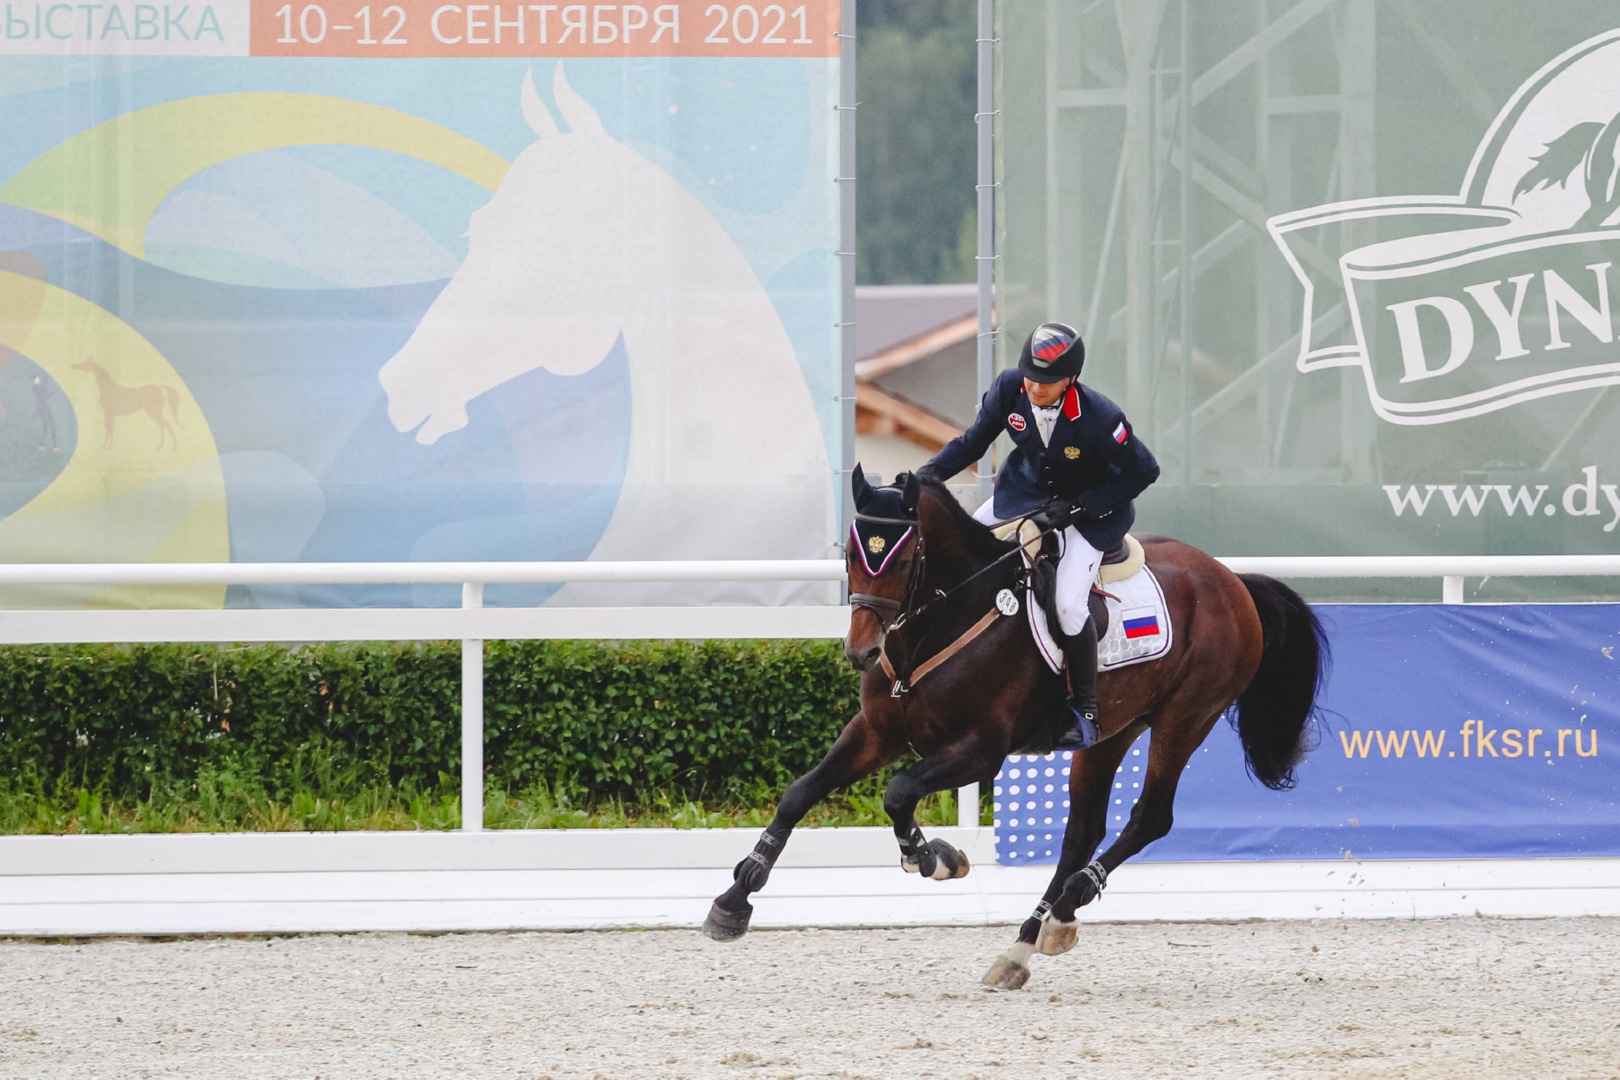 Кубок Наций и Кубок Мира под эгидой Евразийской ассоциации конного спорта получили статус соревнований высшей категории